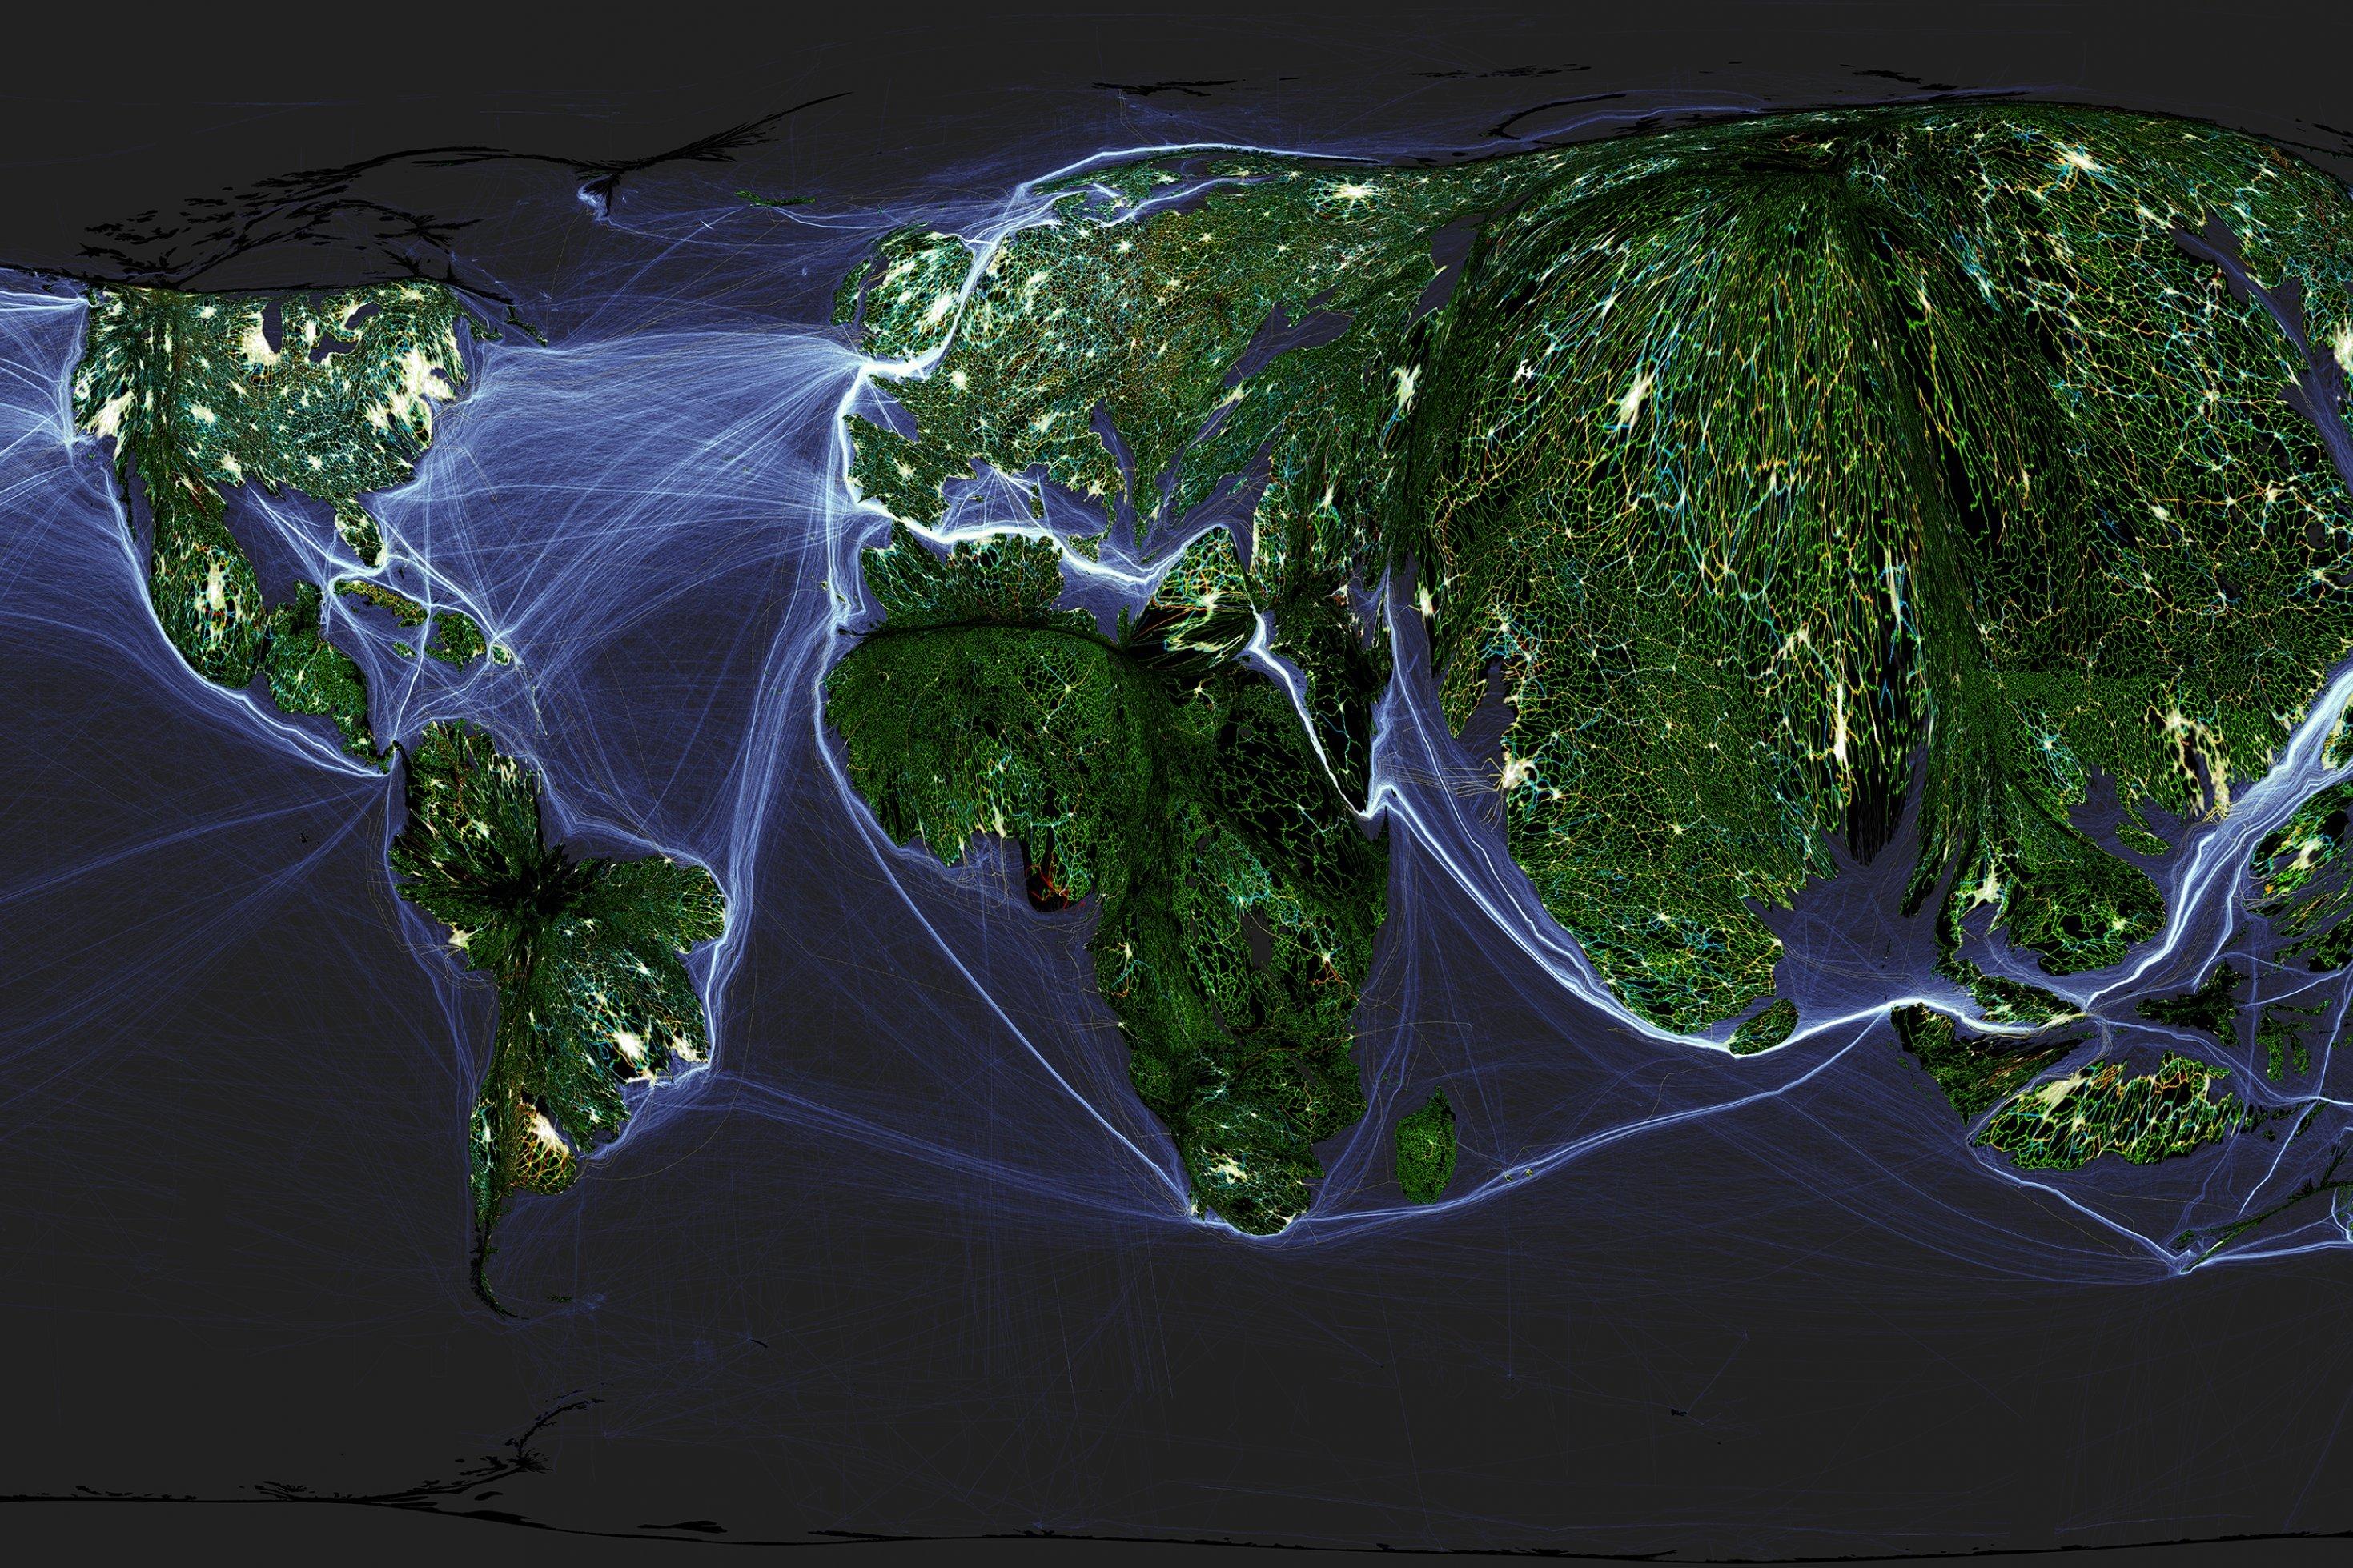 Bevölkerungskartogramm das die Landoberfläche der Erde proportional zur Verteilung der Weltbevölkerung darstellt. Darauf abgebildet sind mehrere Eben menschlicher Nutzung und Interaktion, wie Schiffsverbindungen, Straßen, Pipelines oder bebaute Gebiete.